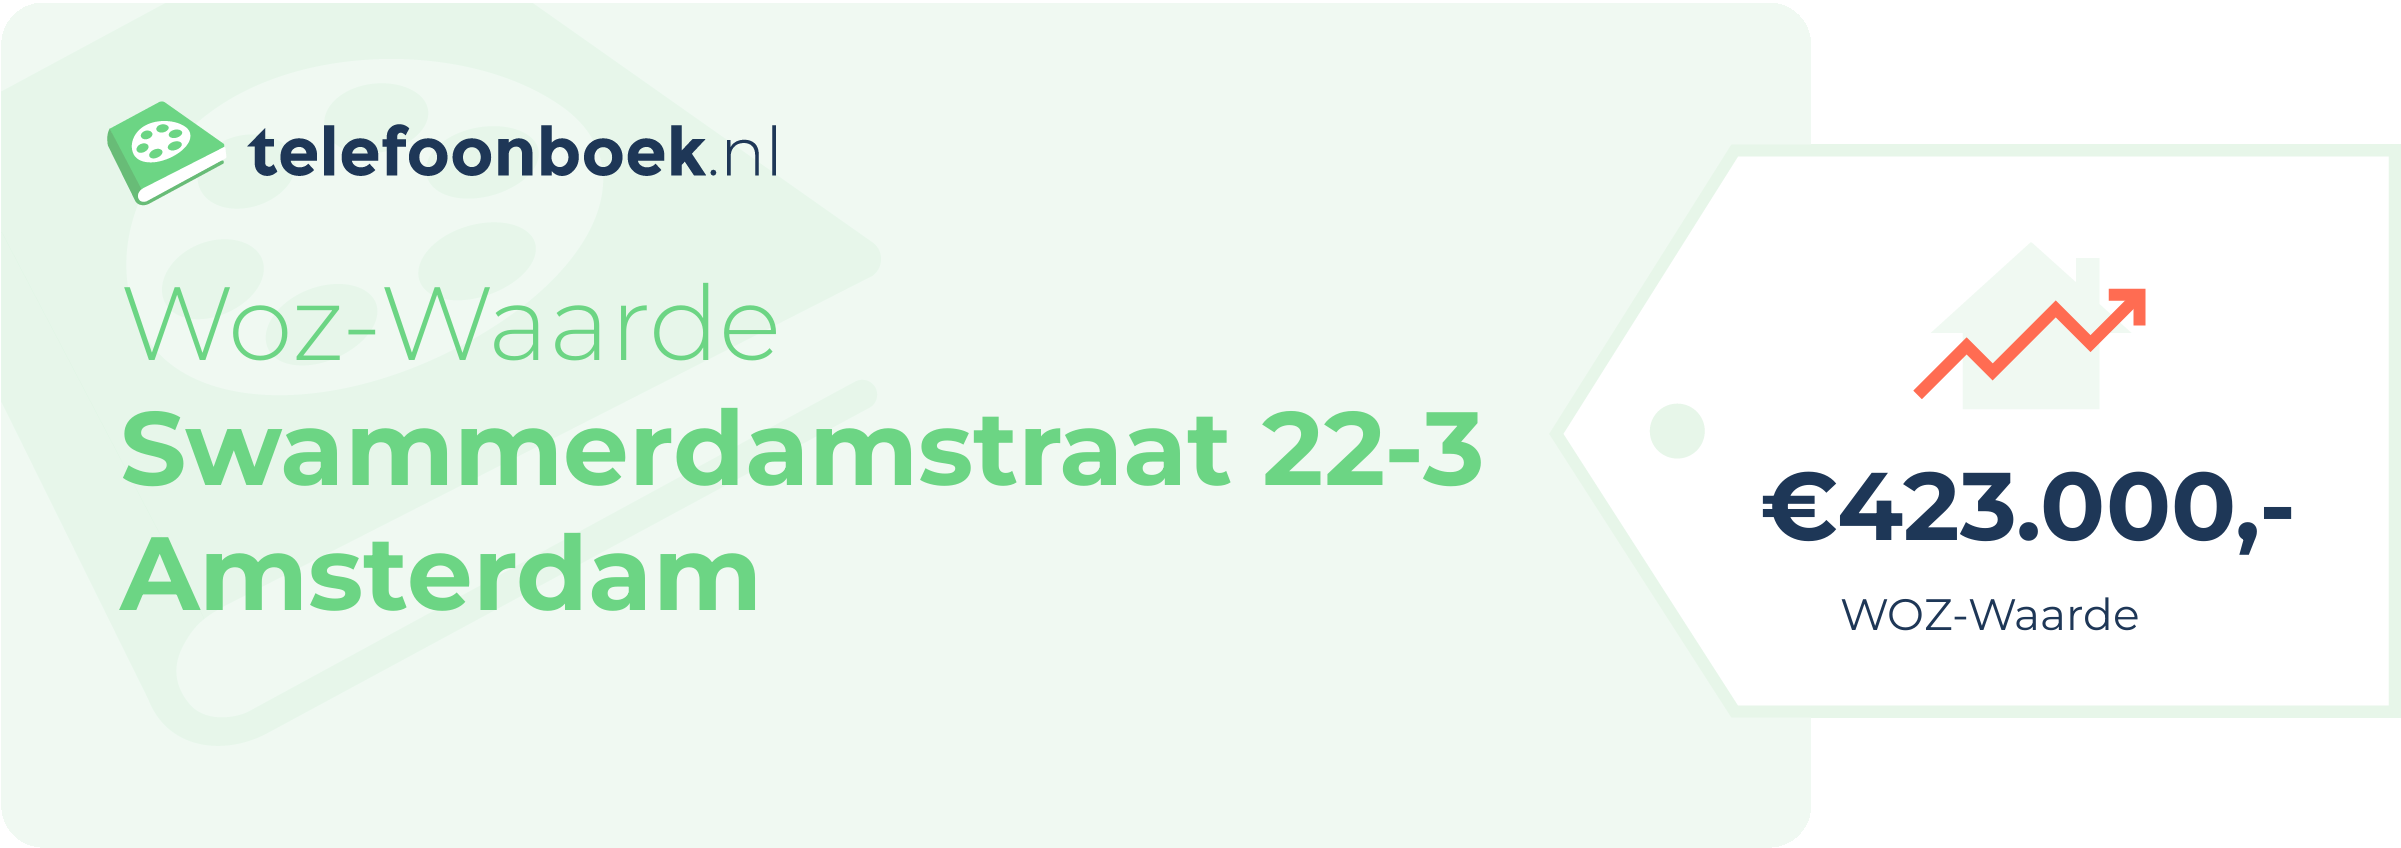 WOZ-waarde Swammerdamstraat 22-3 Amsterdam